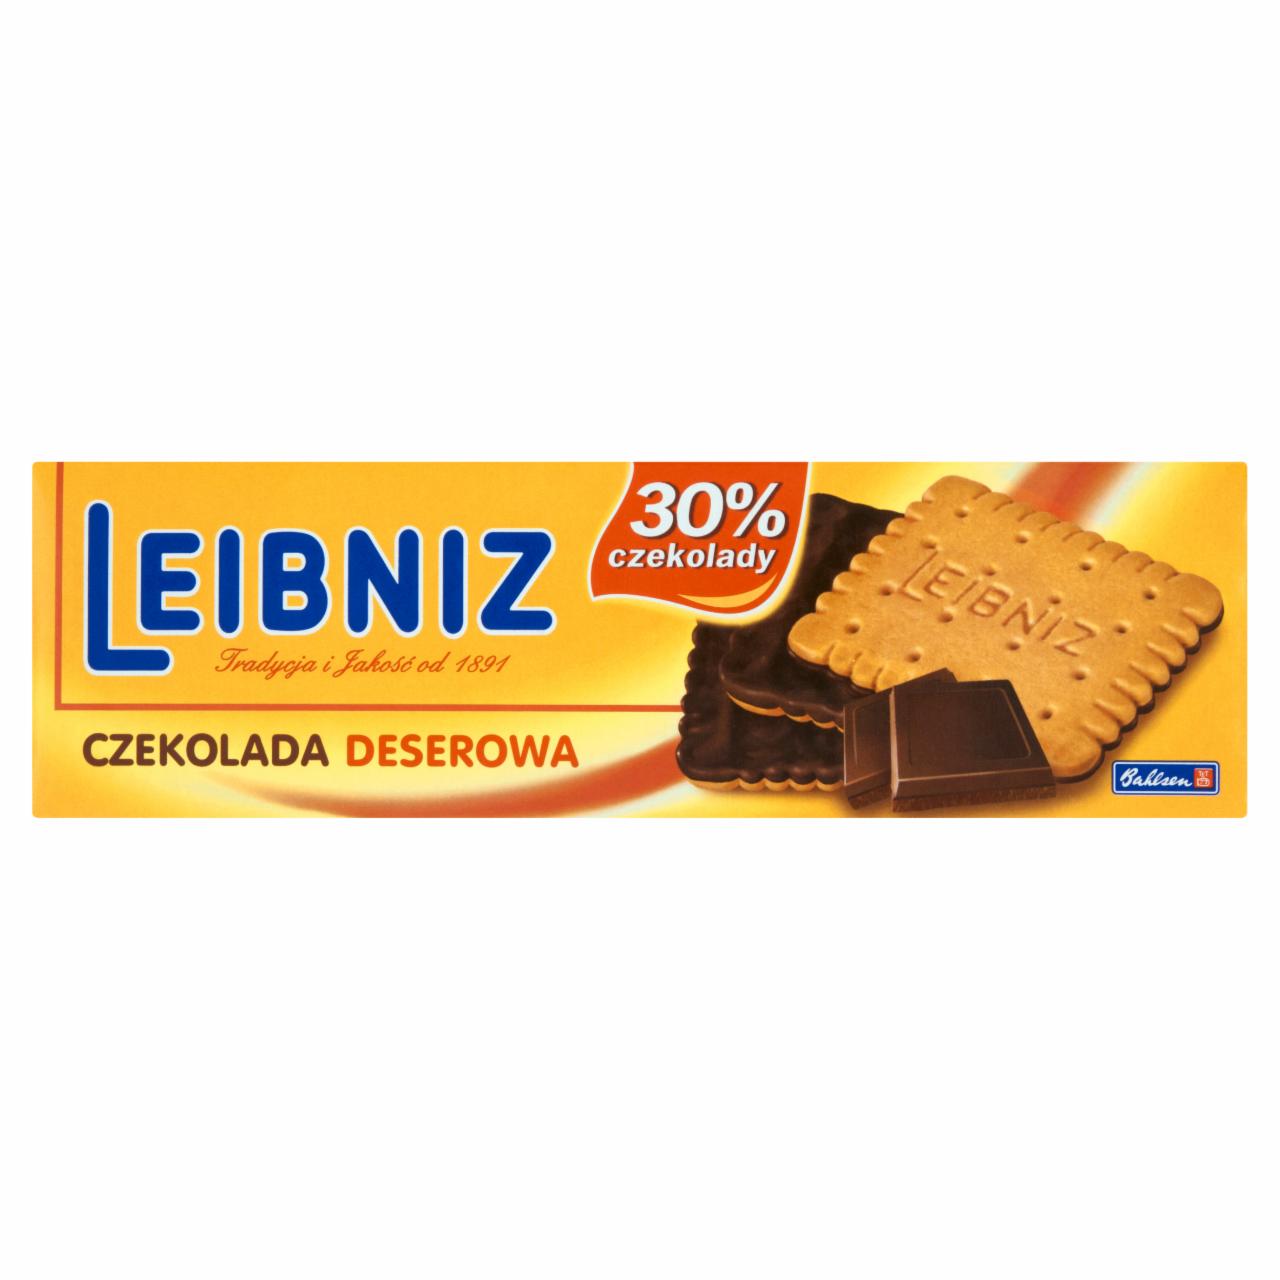 Zdjęcia - Leibniz Czekolada deserowa Herbatniki z dodatkiem masła w czekoladzie deserowej 95 g